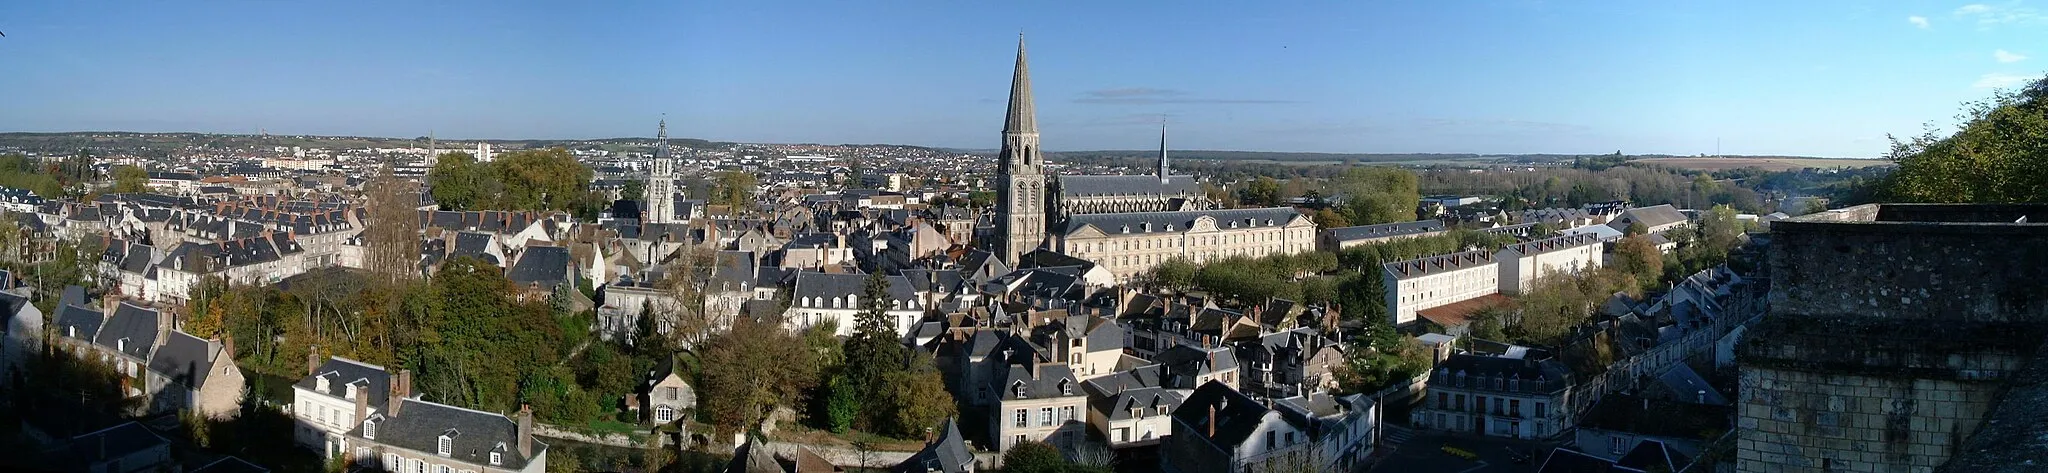 Photo showing: Vue panoramique de la ville de Vendôme (41-France) depuis le Château.
Catégorie:Commune de Loir-et-Cher